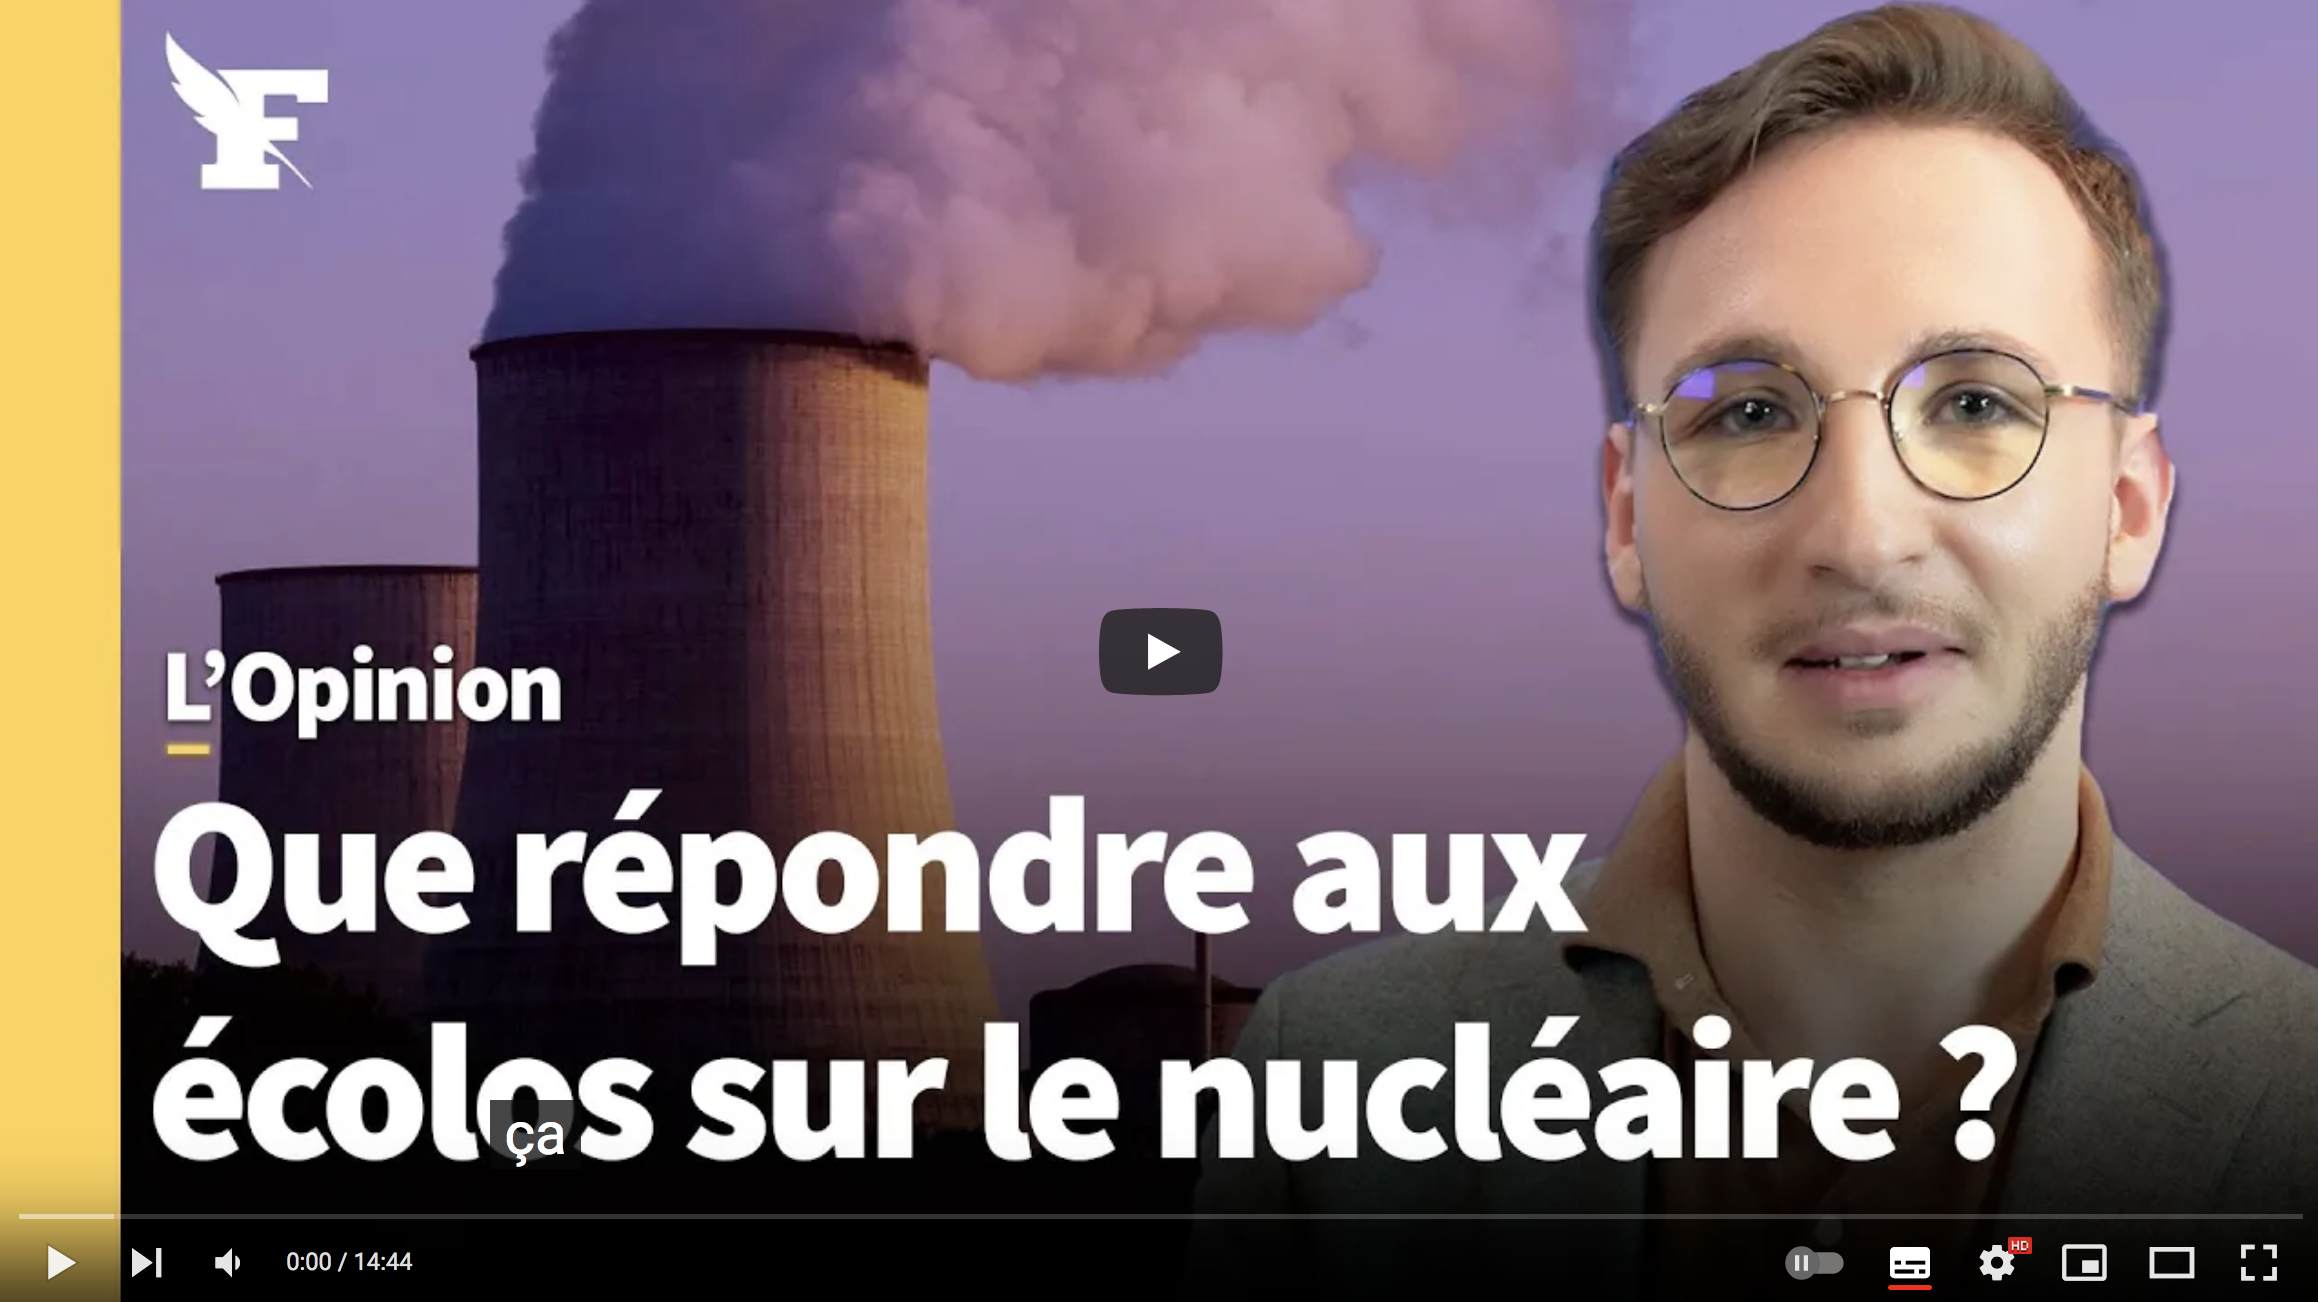 Nucléaire : un ingénieur répond à Nicolas Hulot, Ségolène Royal, François Hollande… (VIDÉO)